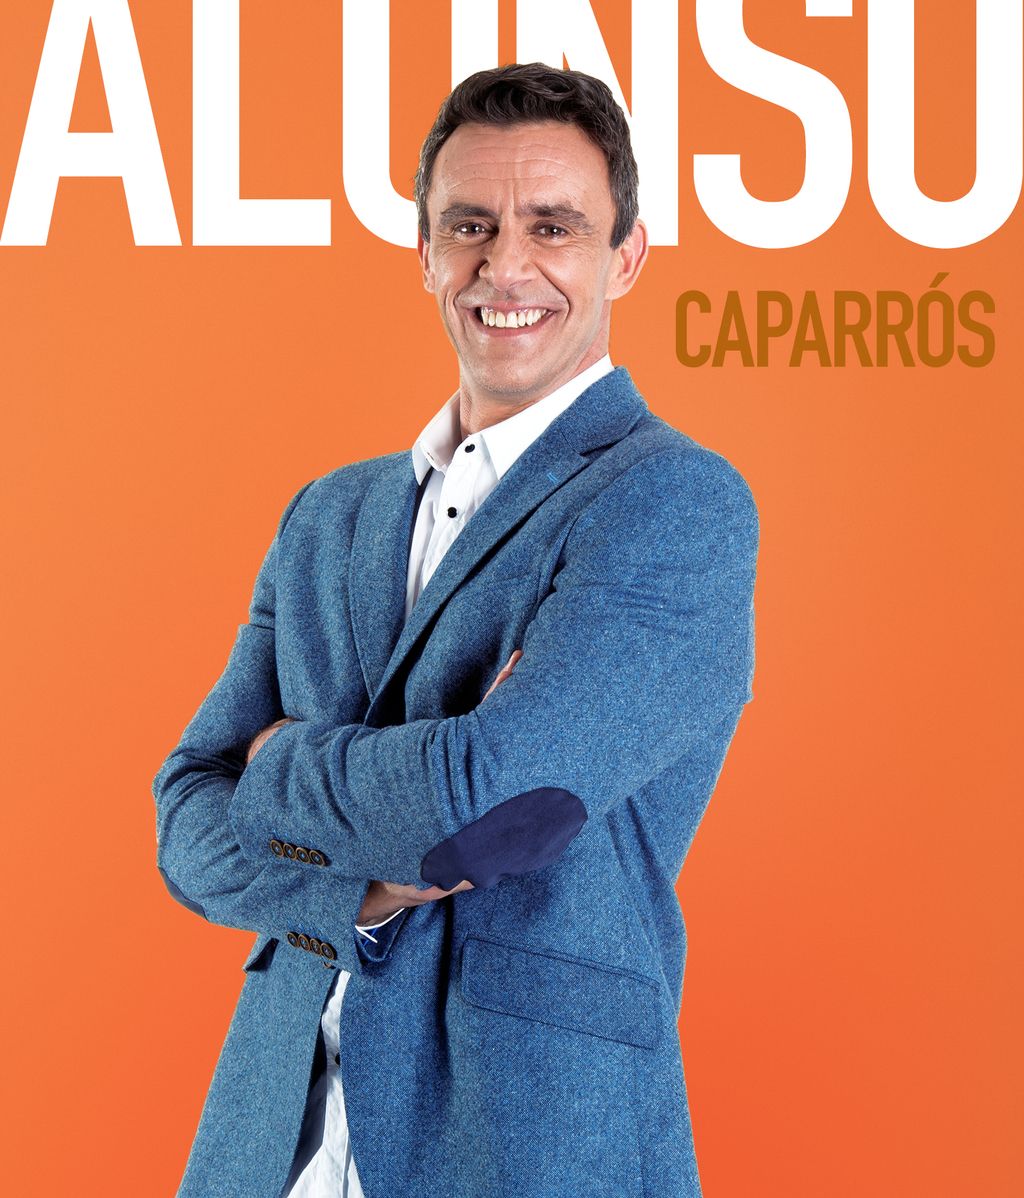 Alonso Caparrós